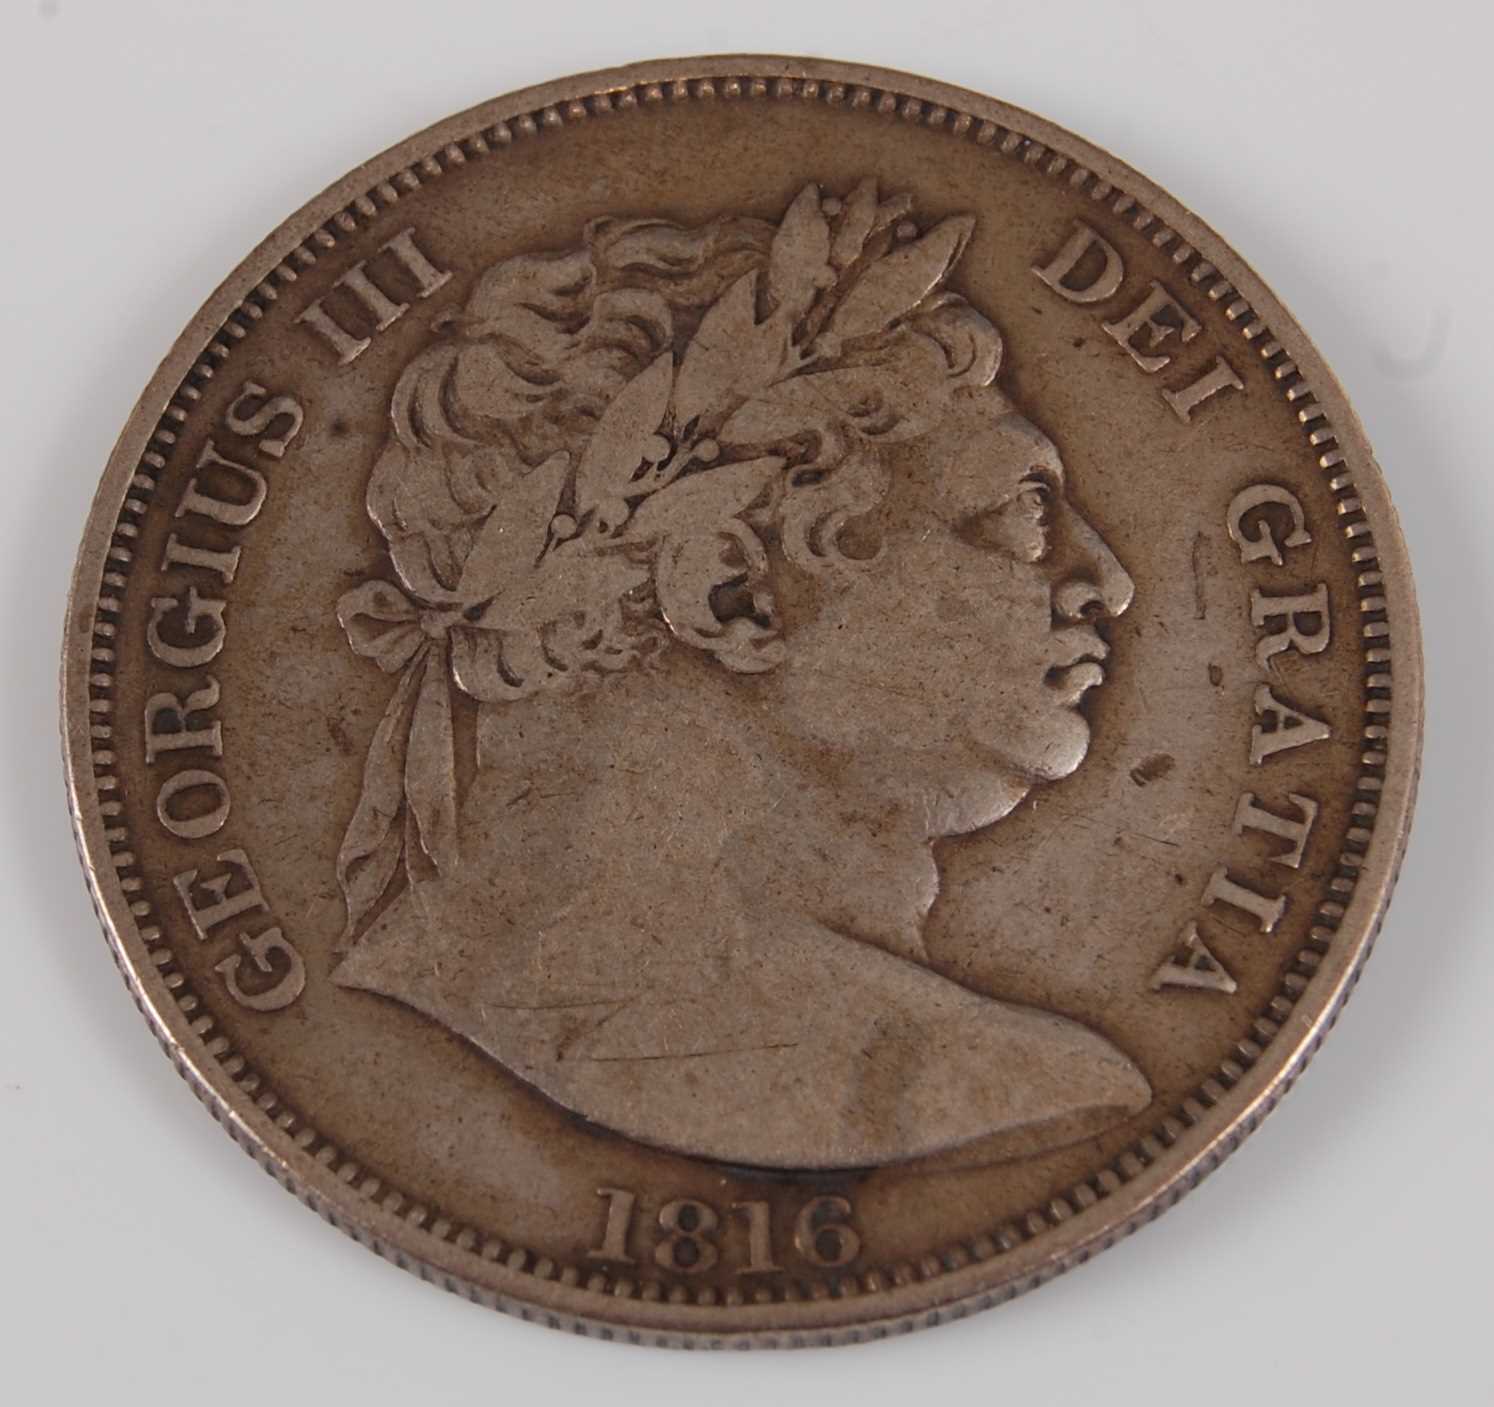 Lot 68 - Great Britain, 1816 half crown